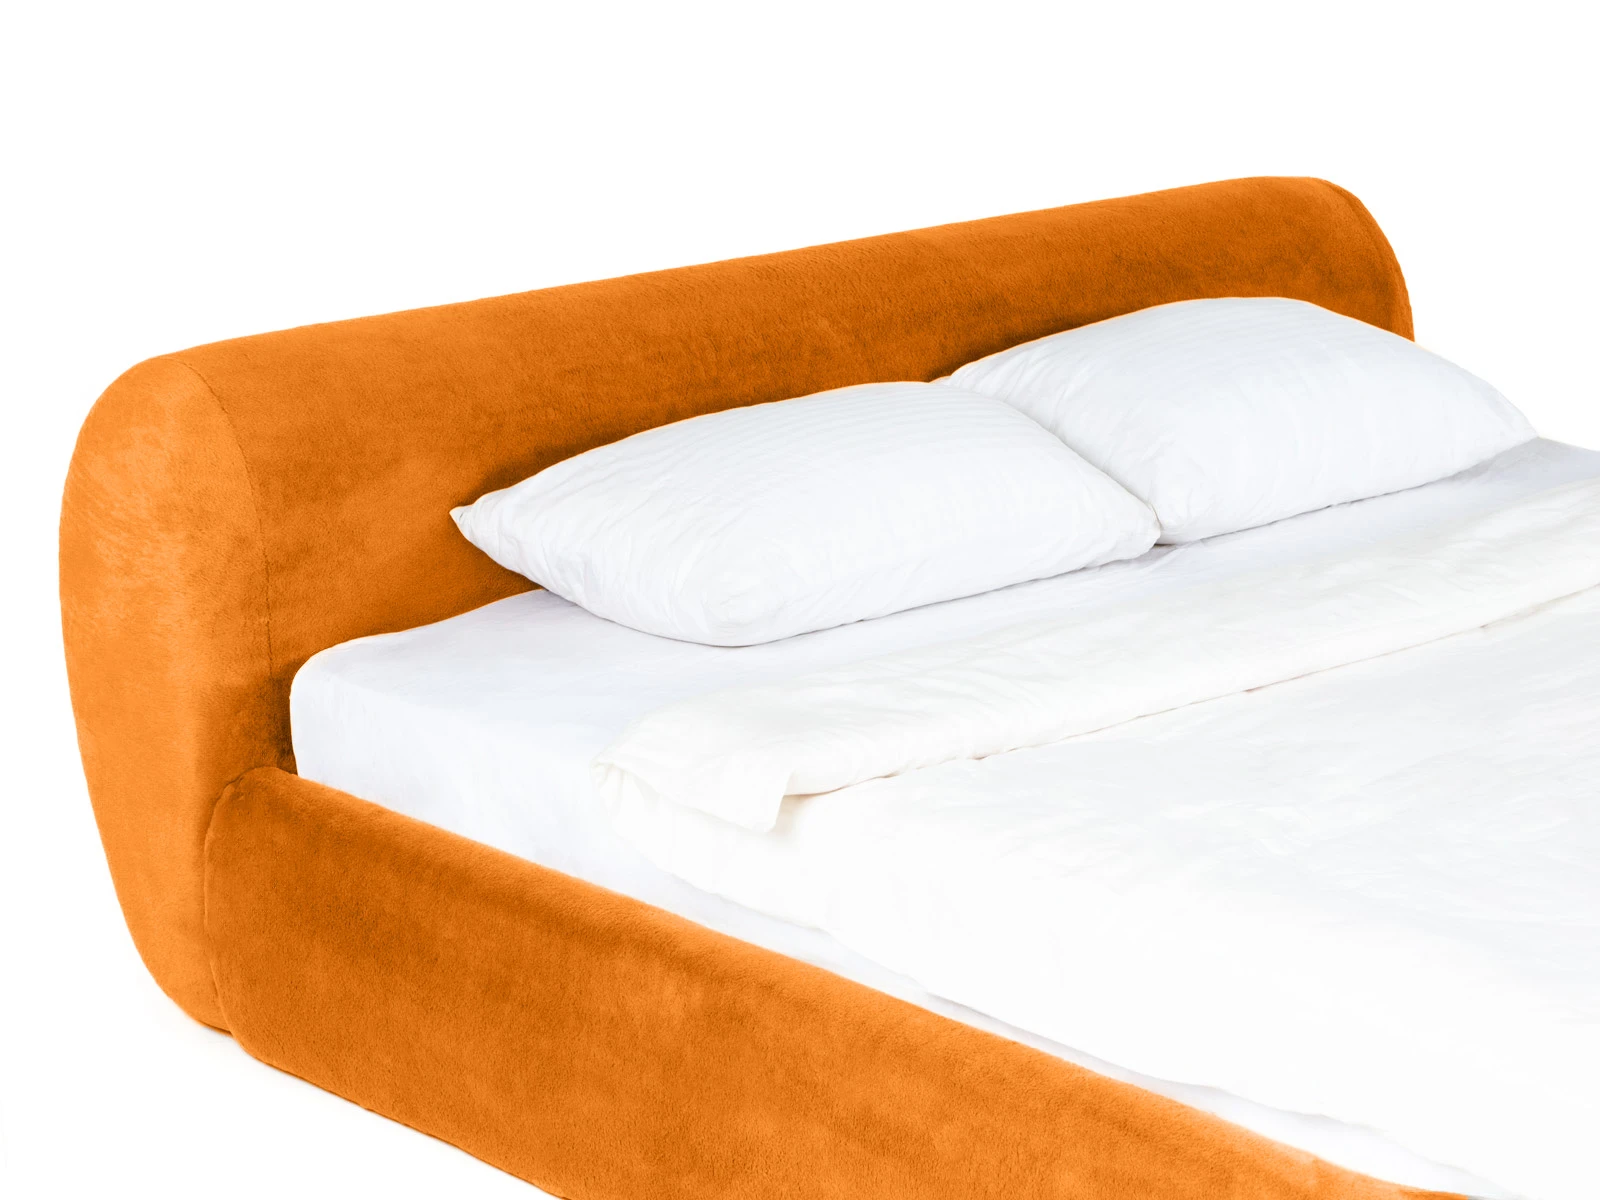 Кровать Sintra 180х200 оранжевый 888874